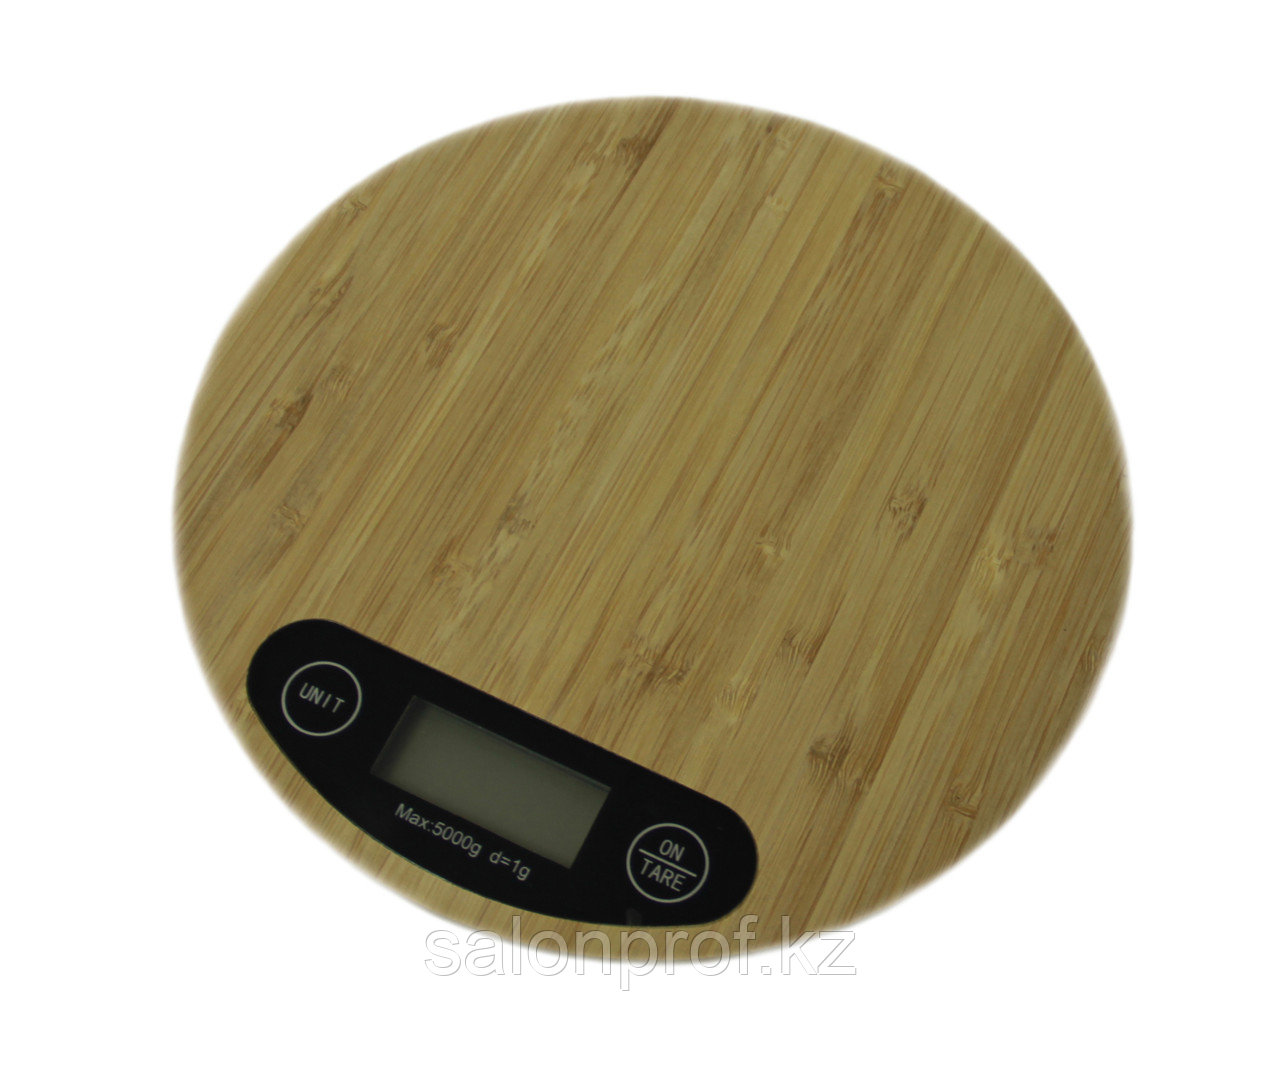 Весы парикмахерские электронные для краски # 9-55 из бамбука круглые (1 г-5 кг) №41324